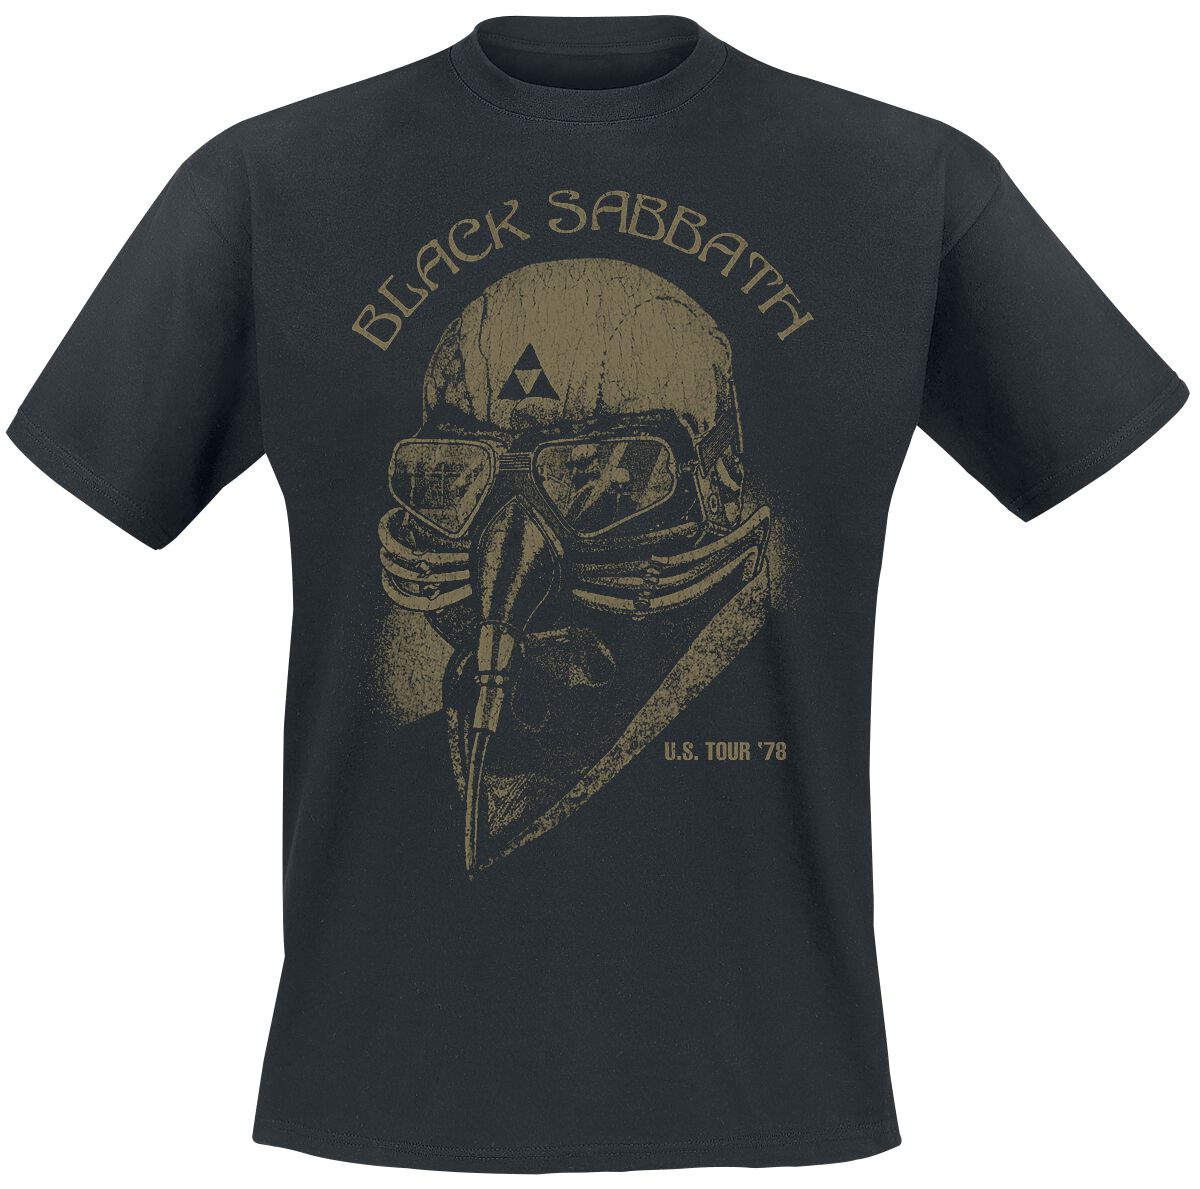 Black Sabbath T-Shirt - U.S. Tour `78 - S bis 5XL - für Männer - Größe L - schwarz  - Lizenziertes Merchandise!